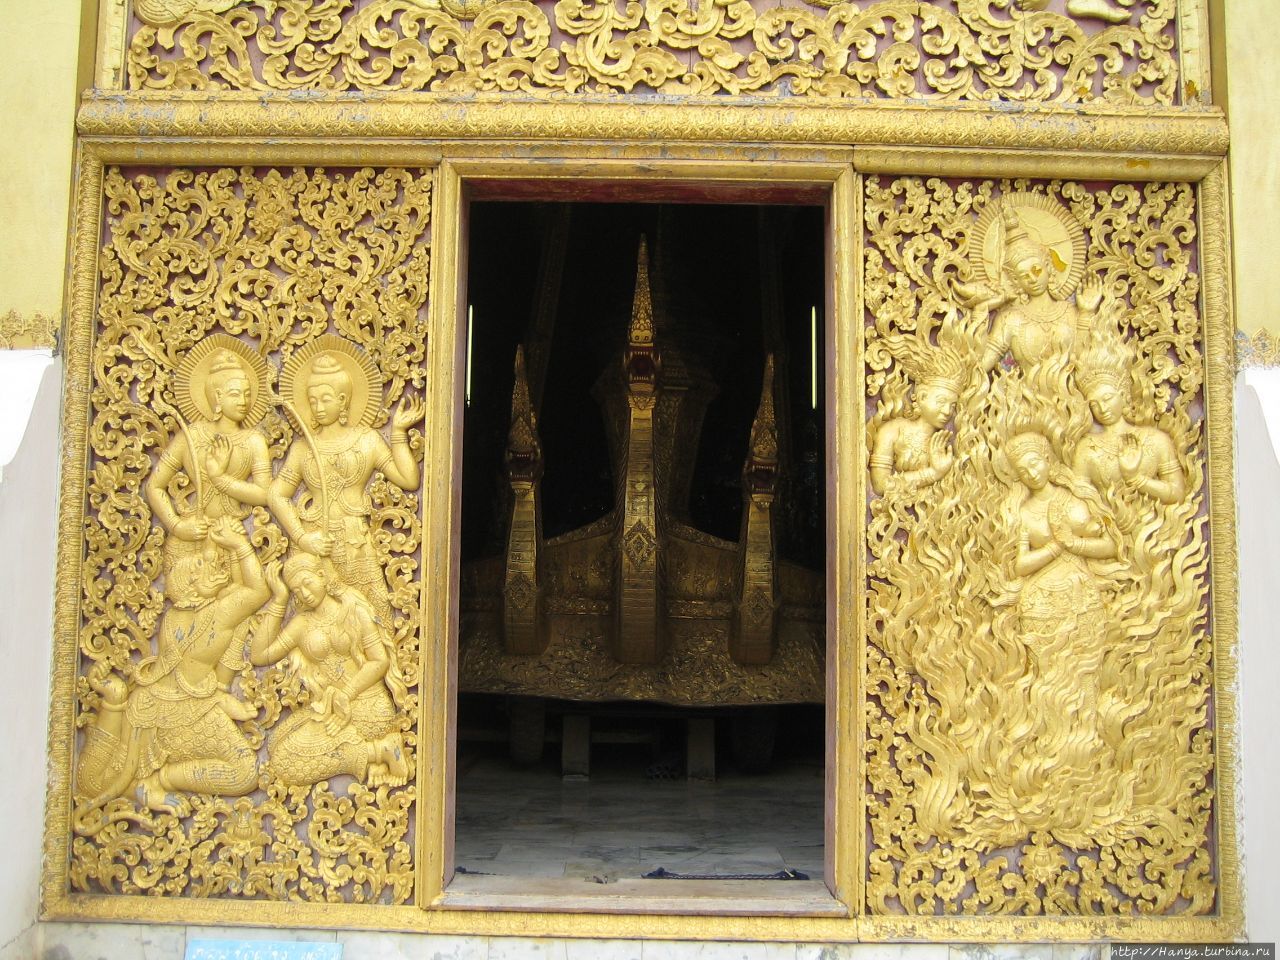 Королевский зал погребальных колесниц в Сиенгтхонге Луанг-Прабанг, Лаос